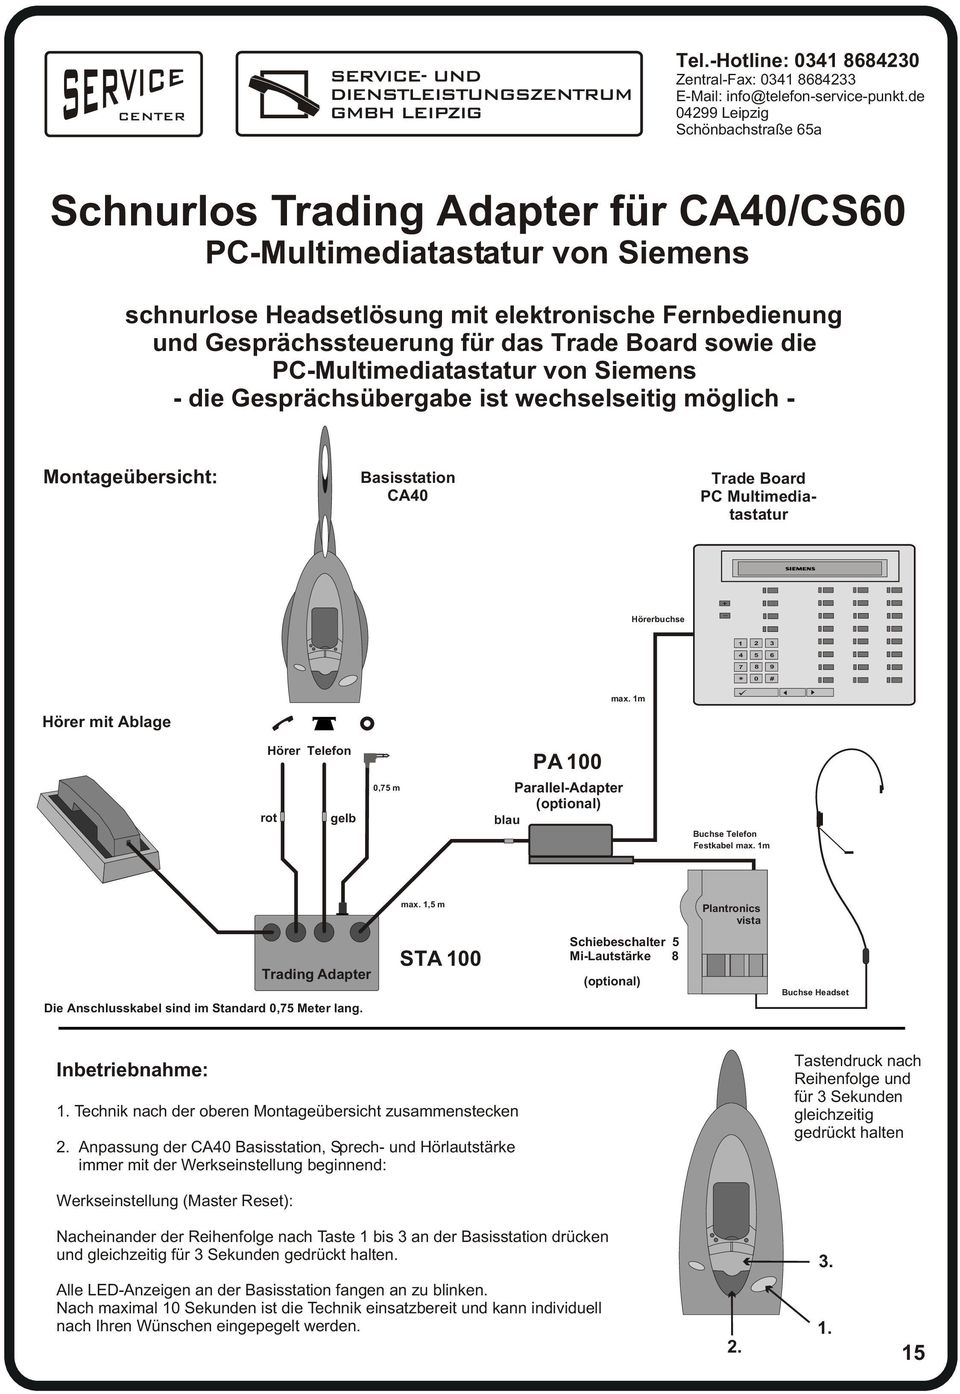 Trade Board sowie die PC-Multimediatastatur von Siemens - die Gesprächsübergabe ist wechselseitig möglich - Montageübersicht: Basisstation CA40 Trade Board PC Multimediatastatur Hörerbuchse + _ Hörer